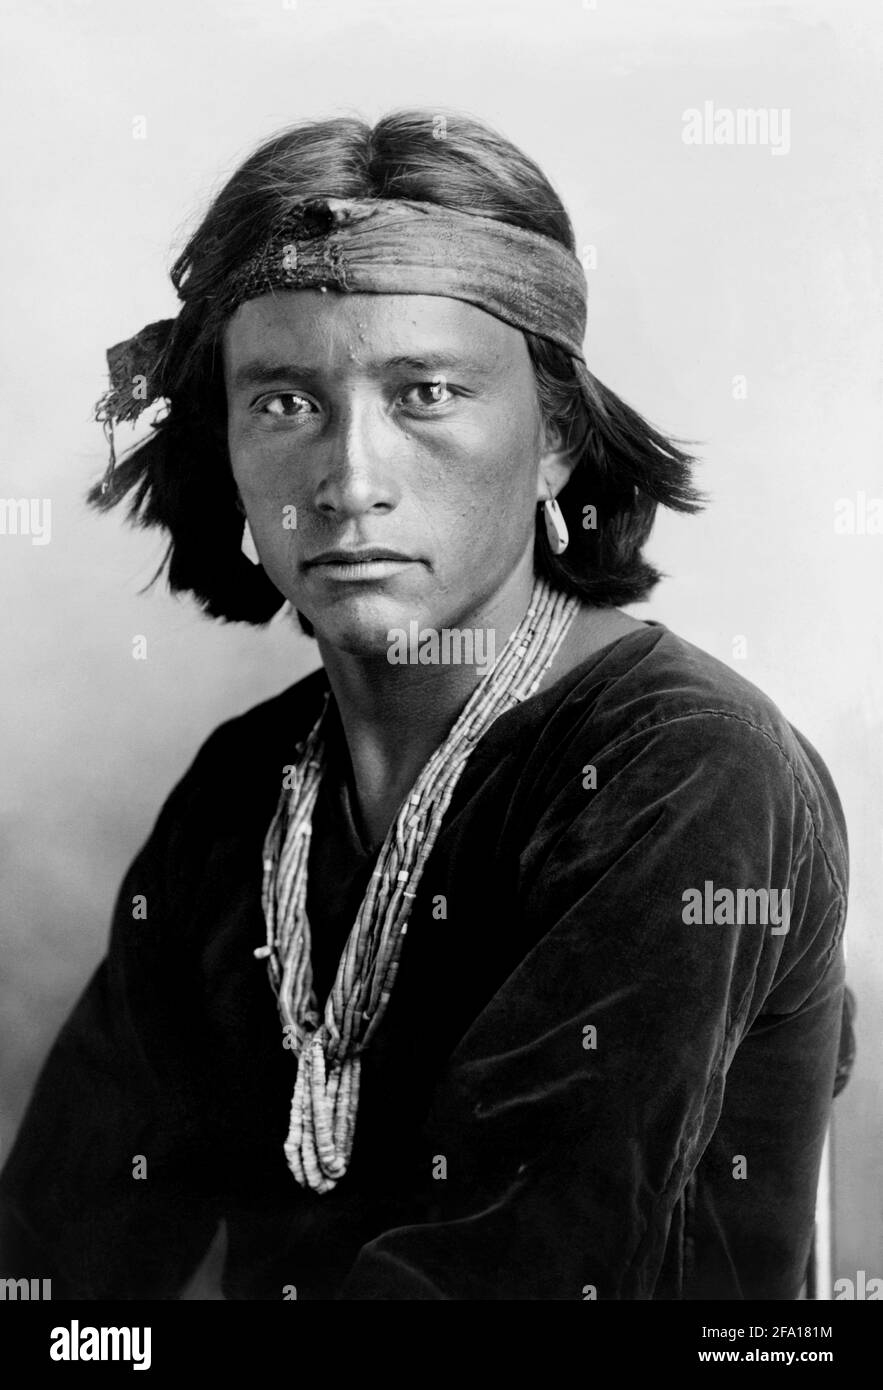 1906 , USA :  Native American portrait of NAVAJO BOY . Photo by photographer KARL E. MOON ( 1878 - 1914 ). - The North American Indian - HISTORY - foto storiche   - foto storica  -  Indians - INDIANI D' AMERICA - PELLEROSSA - natives americans  - Indians of North America - INDIANO - GUERRIERO - WARRIOR - portrait - ritratto  - SELVAGGIO WEST - NICE BEAUTIFUL MAN MEN - UOMO BELLO - PORTRAIT - RITRATTO - collana - necklace - perline --- Archivio GBB Stock Photo